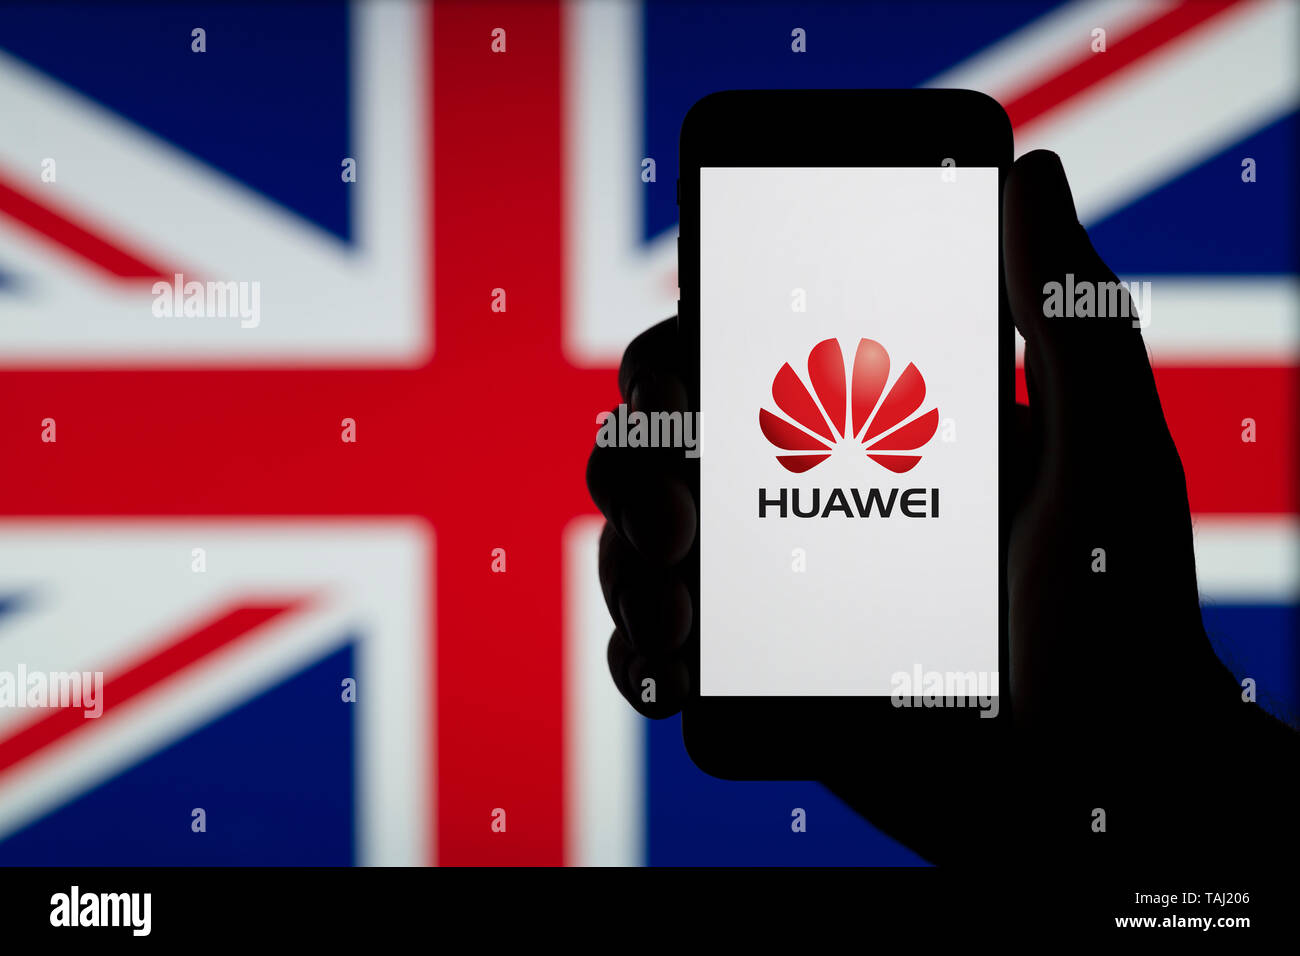 Eine Silhouette einen Mann hält ein Smartphone mit dem Logo der Chinesischen Firma HUAWEI, mit einer britischen Flagge im Hintergrund (nur redaktionelle Nutzung). Stockfoto